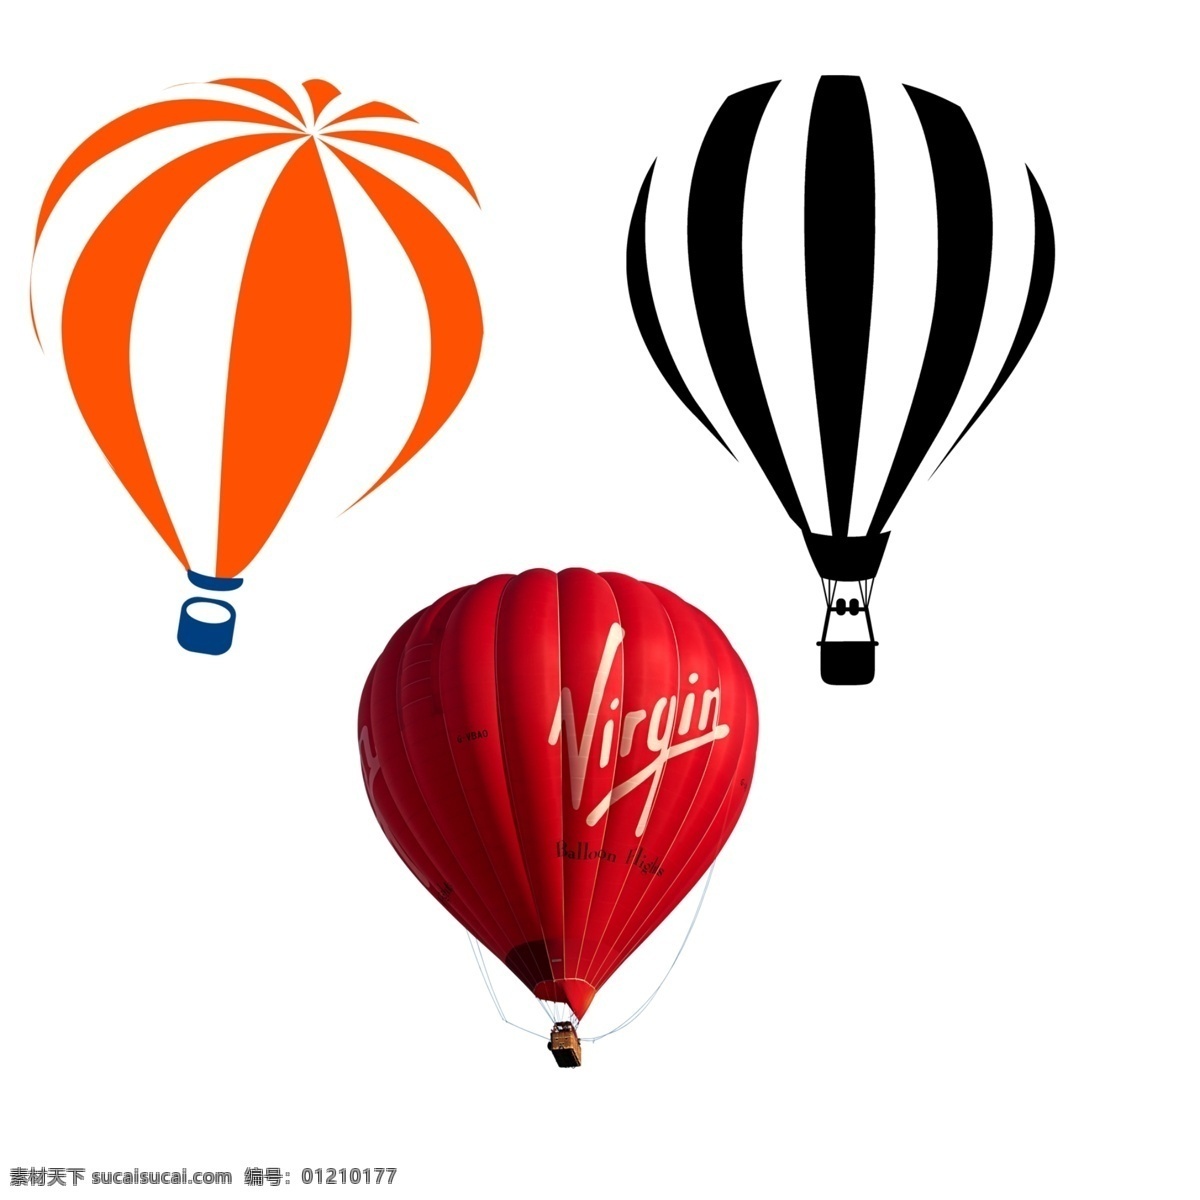 气球 交通工具 飞行器 观光气球 飞行气球 卡通热气球 热气球素材 现代科技